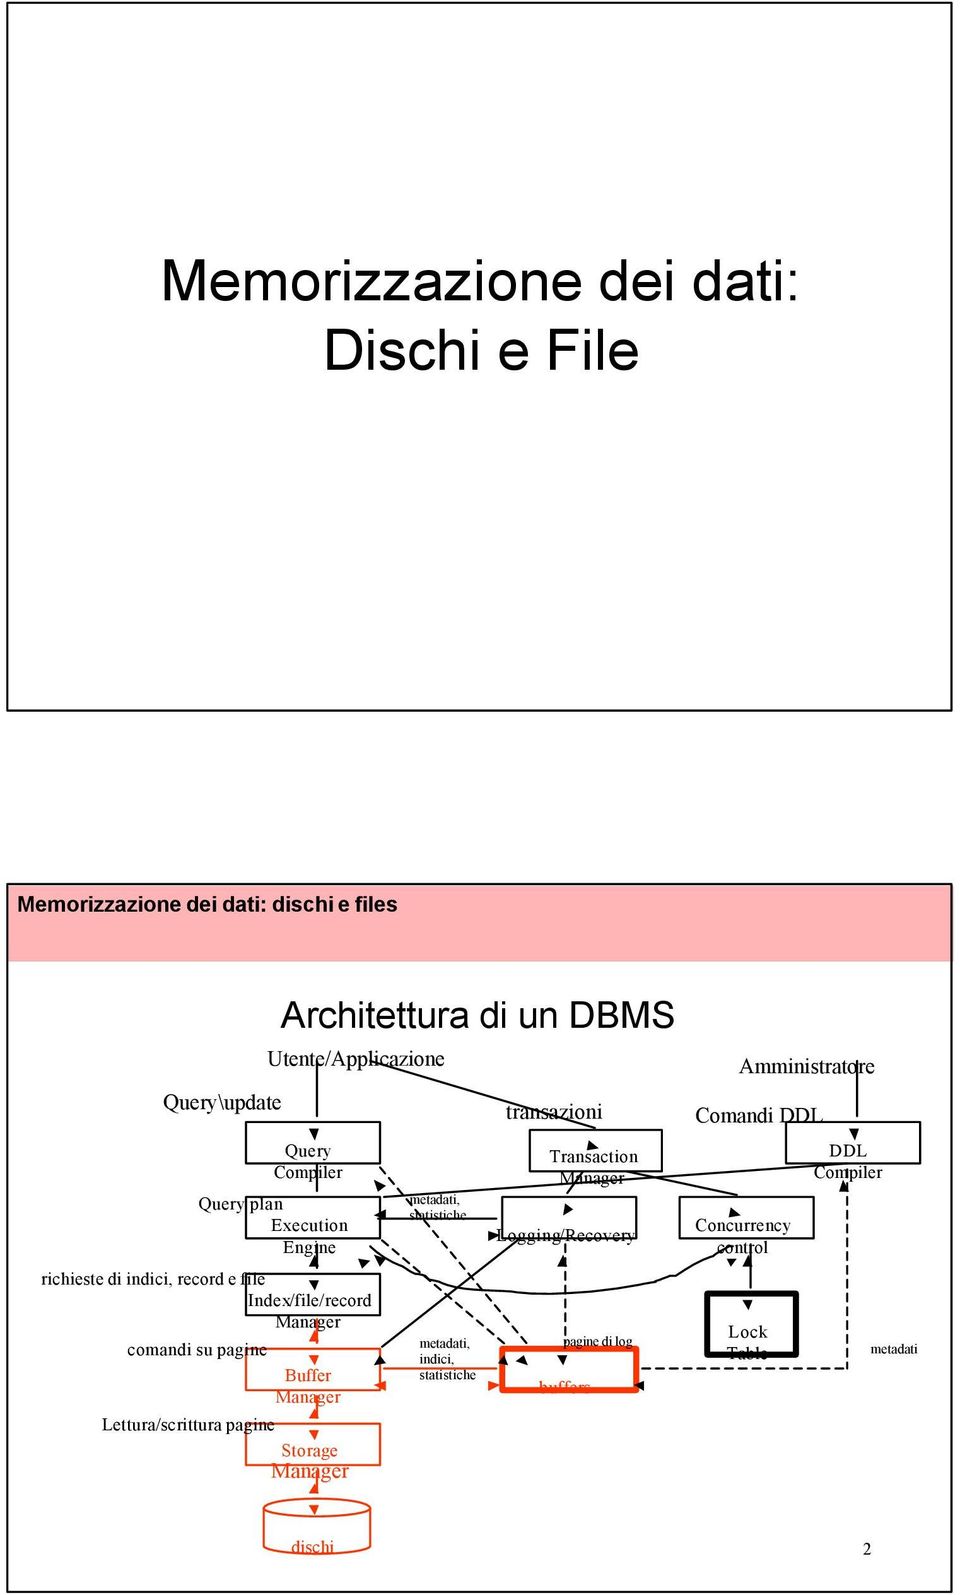 Architettura di un DBMS Utente/Applicazione metadati, statistiche metadati, indici, statistiche transazioni Transaction